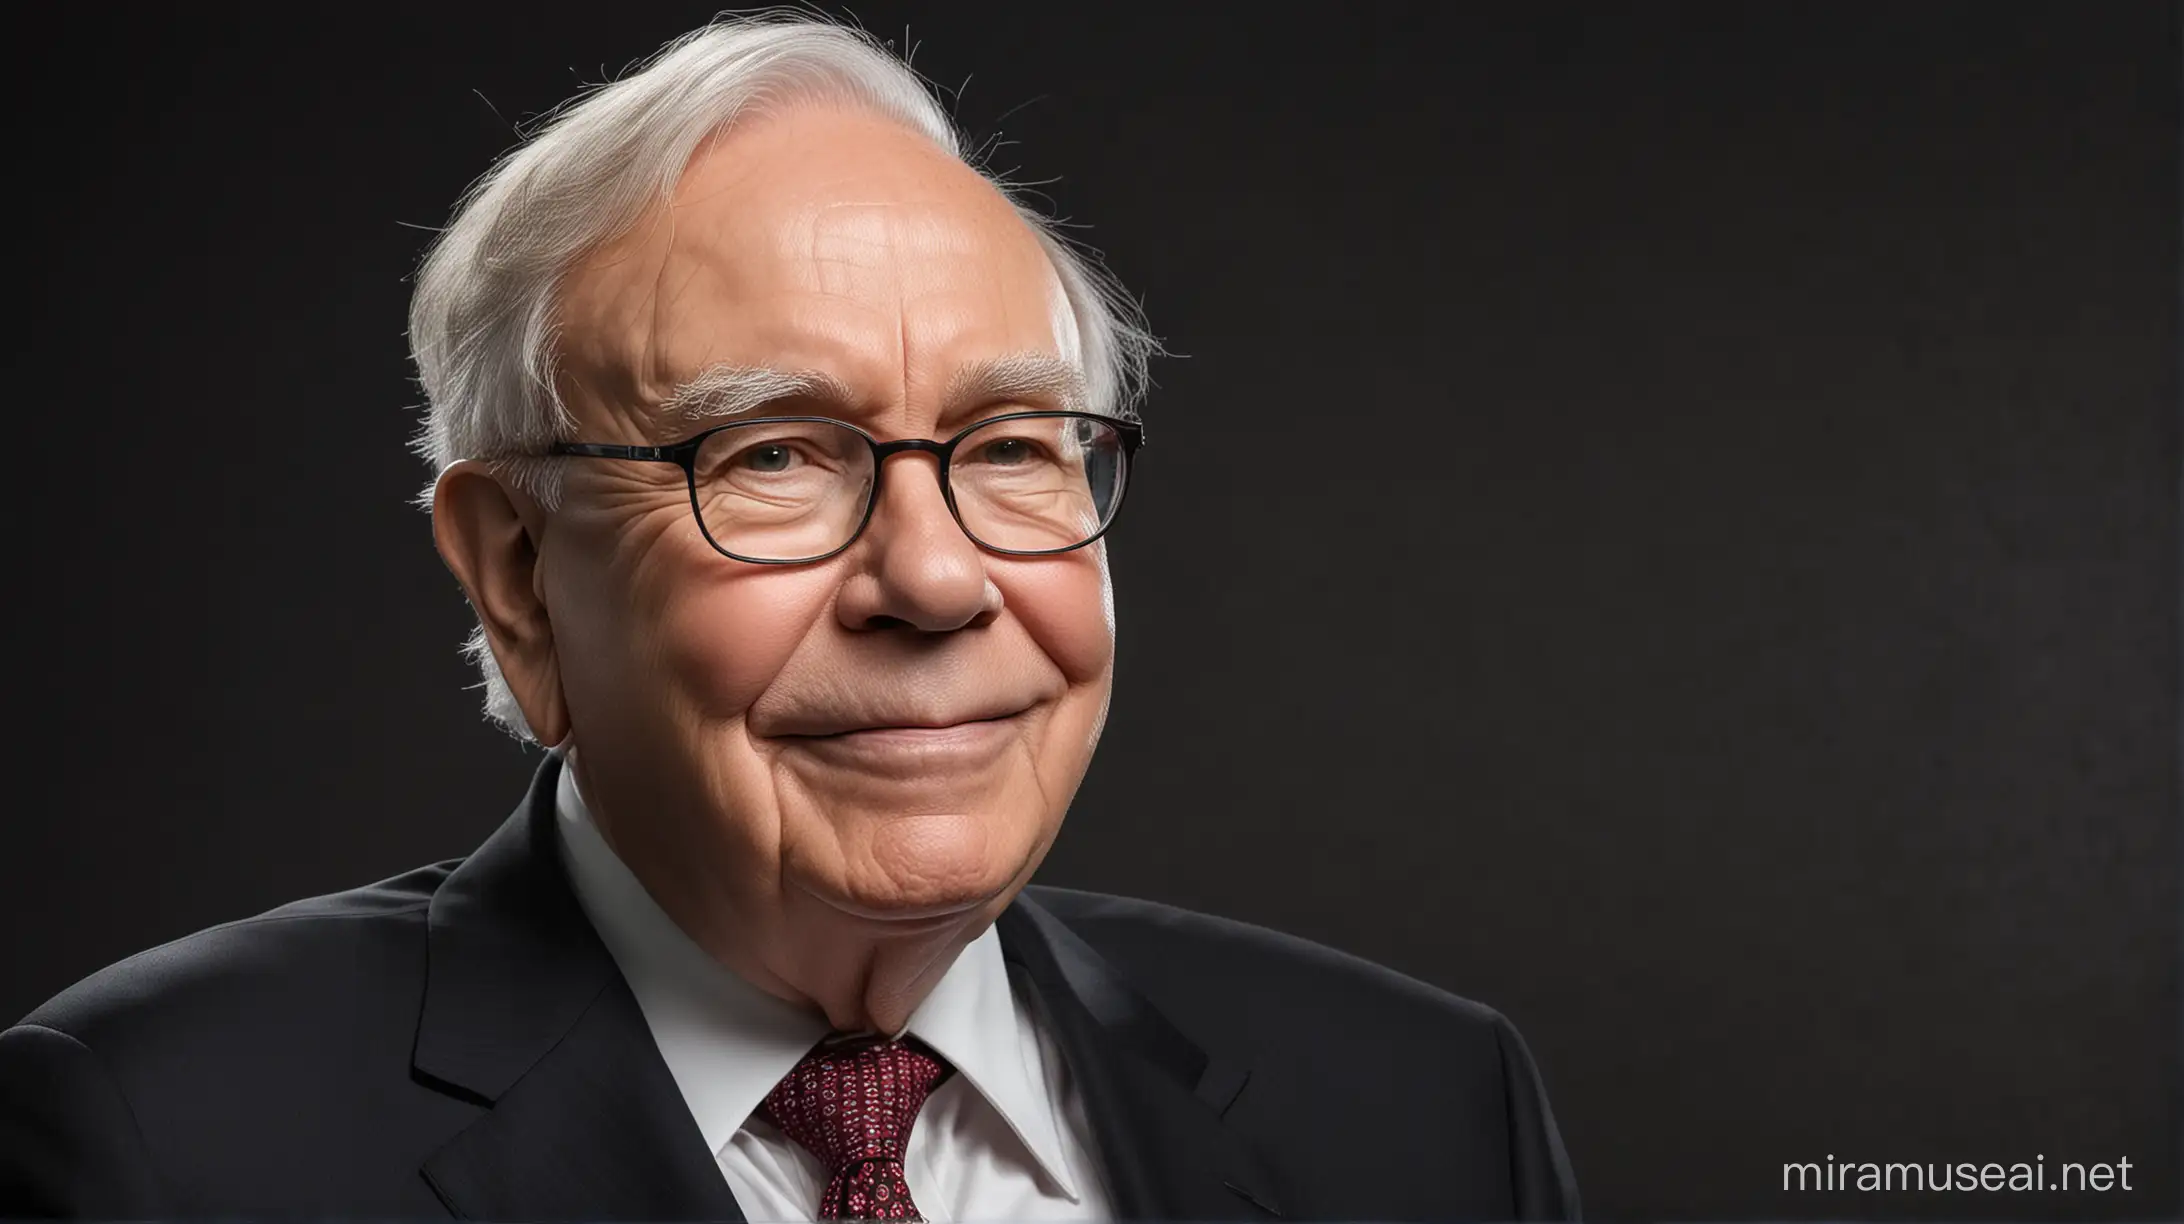 Warren Buffett Portrait with Dark Background